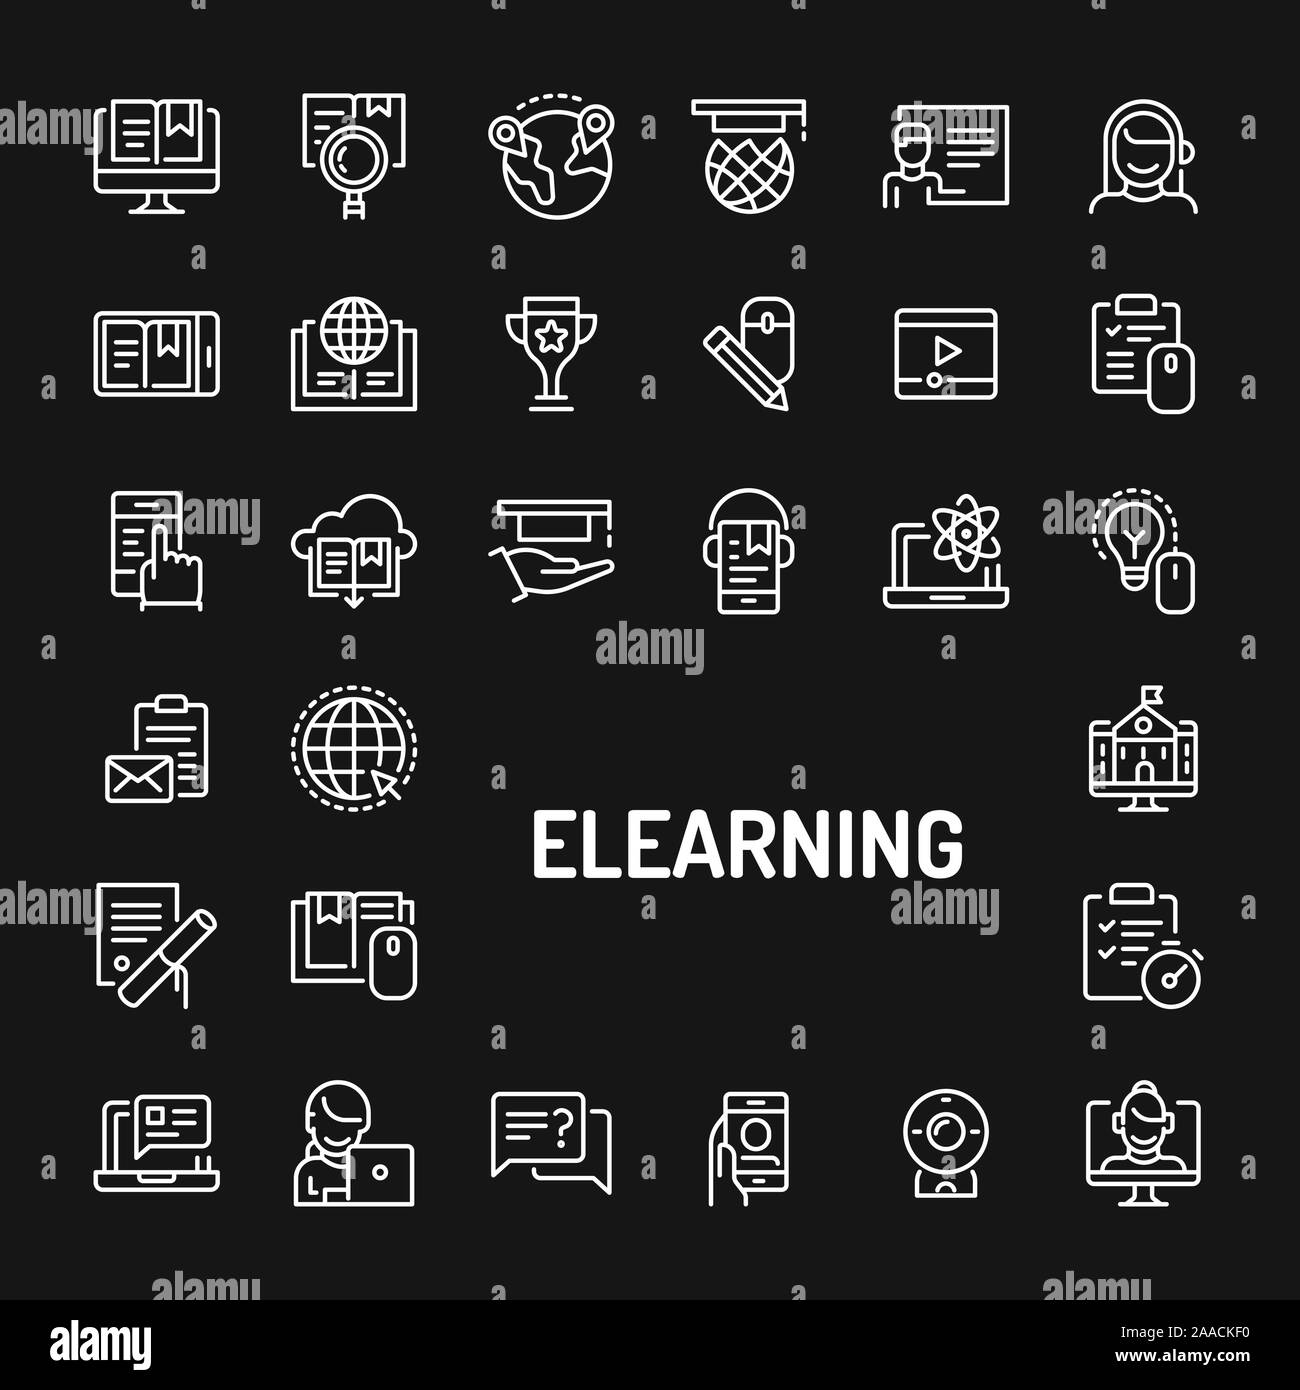 Iconos de líneas sencillas en blanco sobre fondo negro aislados relacionados con medios electrónicos de aprendizaje y capacitación en línea. Signos y símbolos de vectores colecciones fo Ilustración del Vector